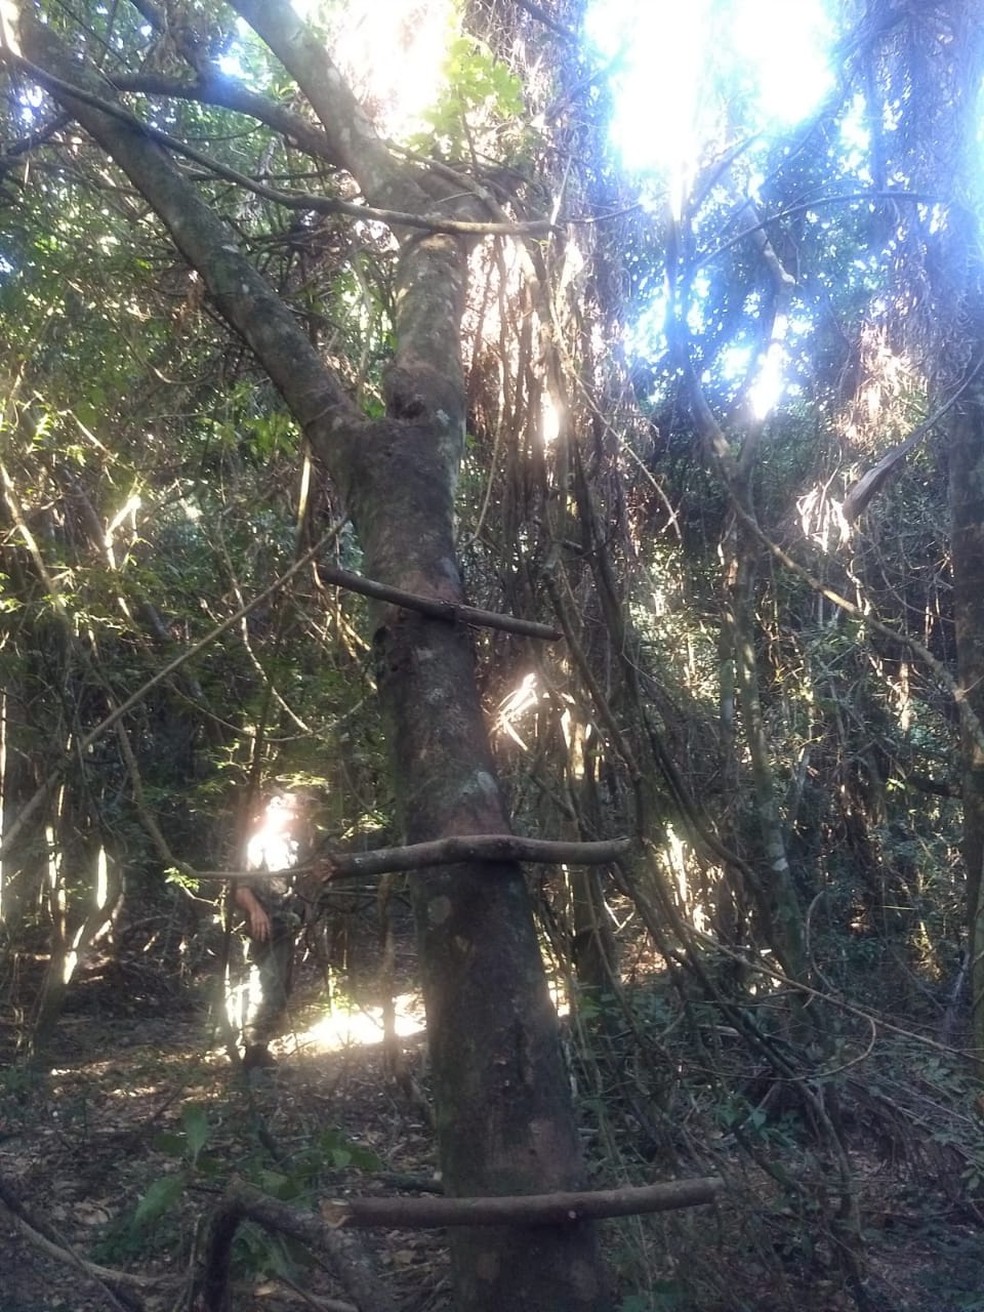 Mandioca e um jirau do tipo espera, instalado em uma árvore, foram constatados no local — Foto: Polícia Ambiental